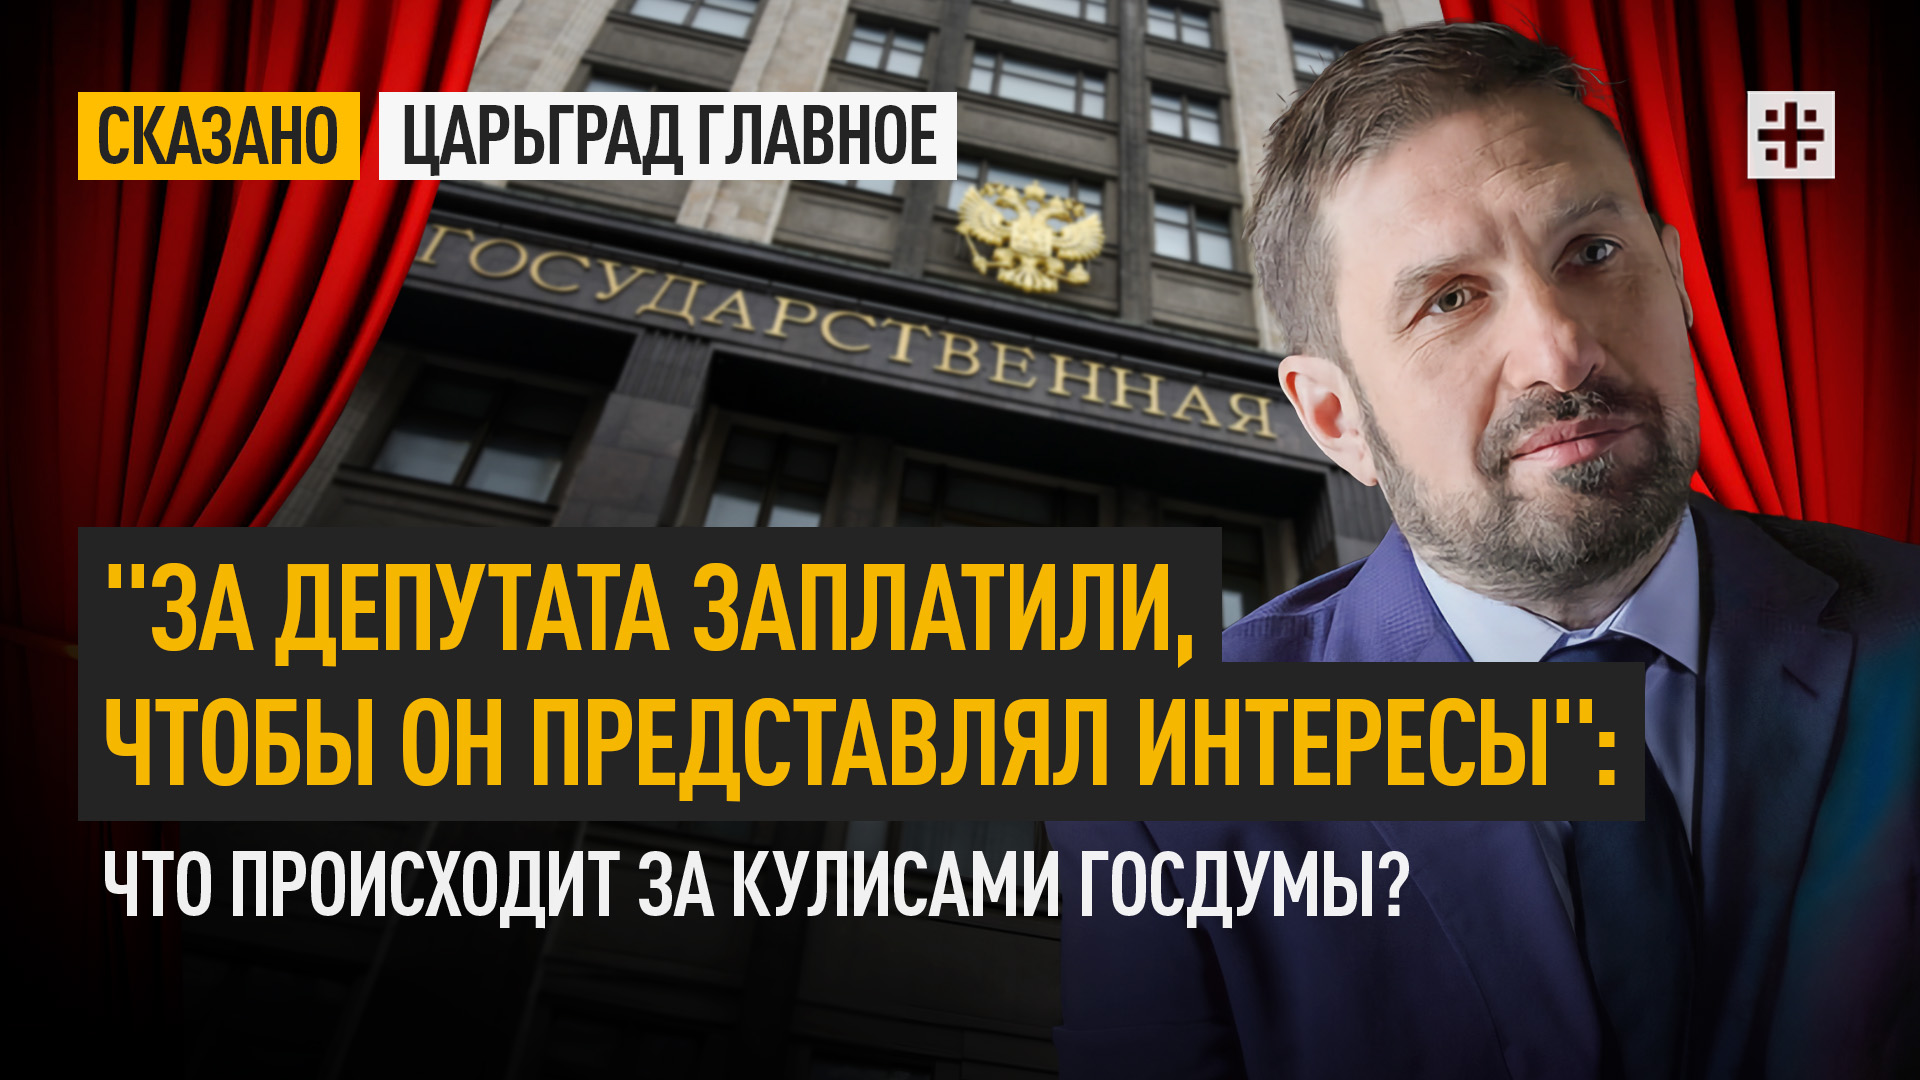 "За депутата заплатили, чтобы он представлял интересы": Что происходит за кулисами Госдумы?